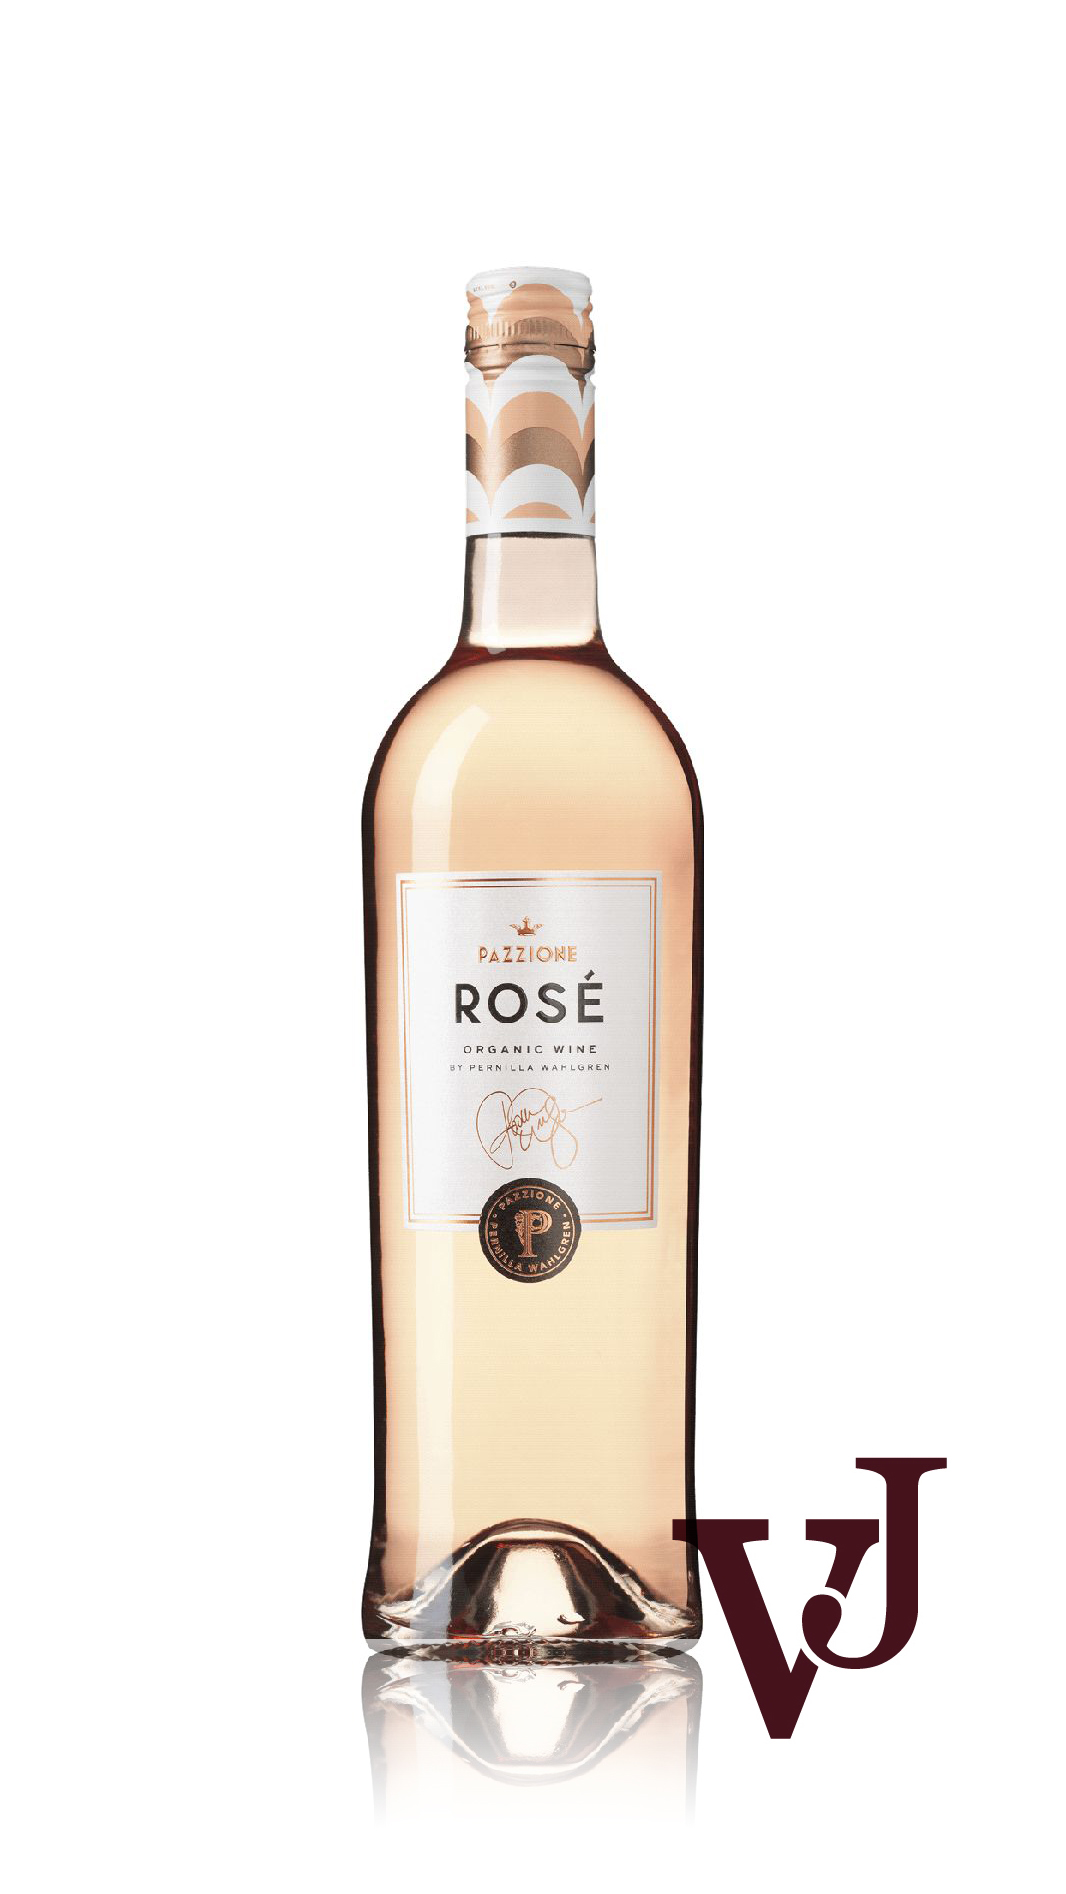 Rosé Vin - Pazzione Rosé by Pernilla Wahlgren artikel nummer 8658201 från producenten Vinimundi från området Spanien